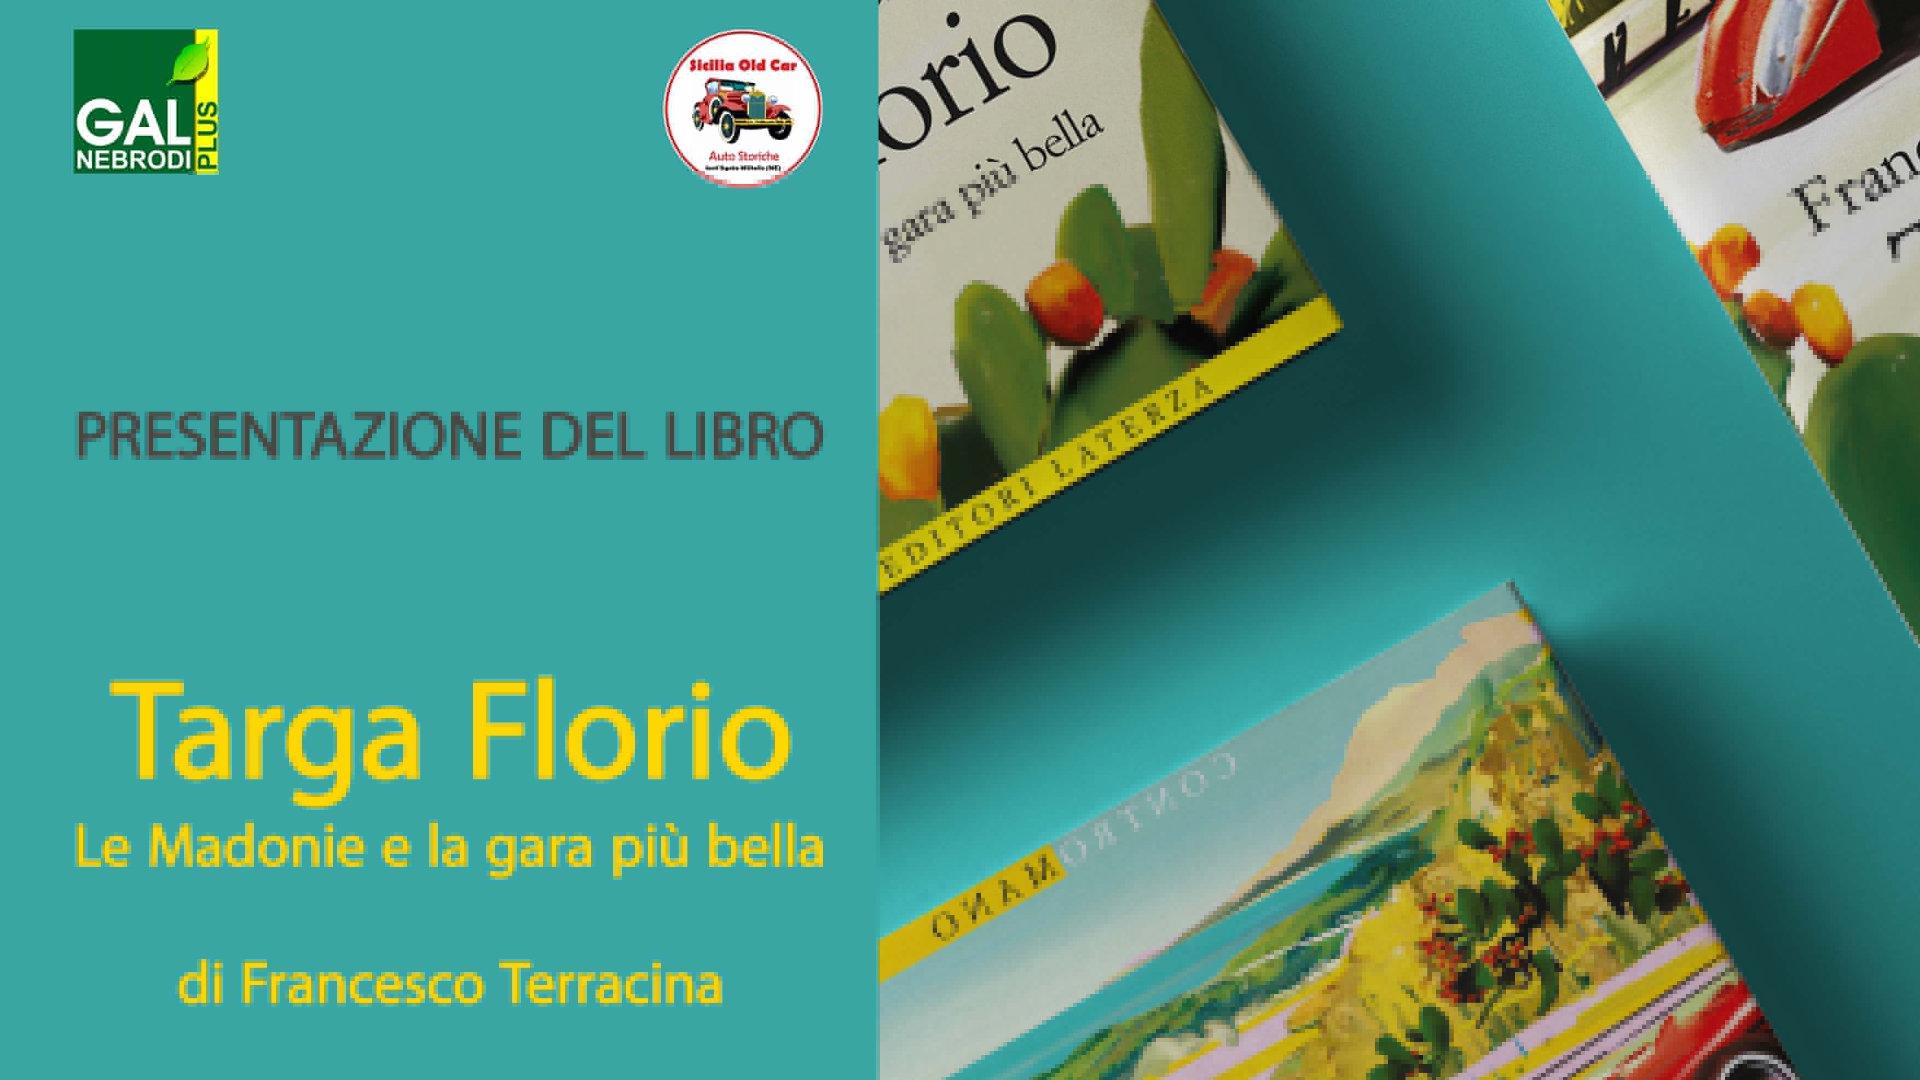 Presentazione del libro “Targa Florio – Le Madonie e la gara più bella”